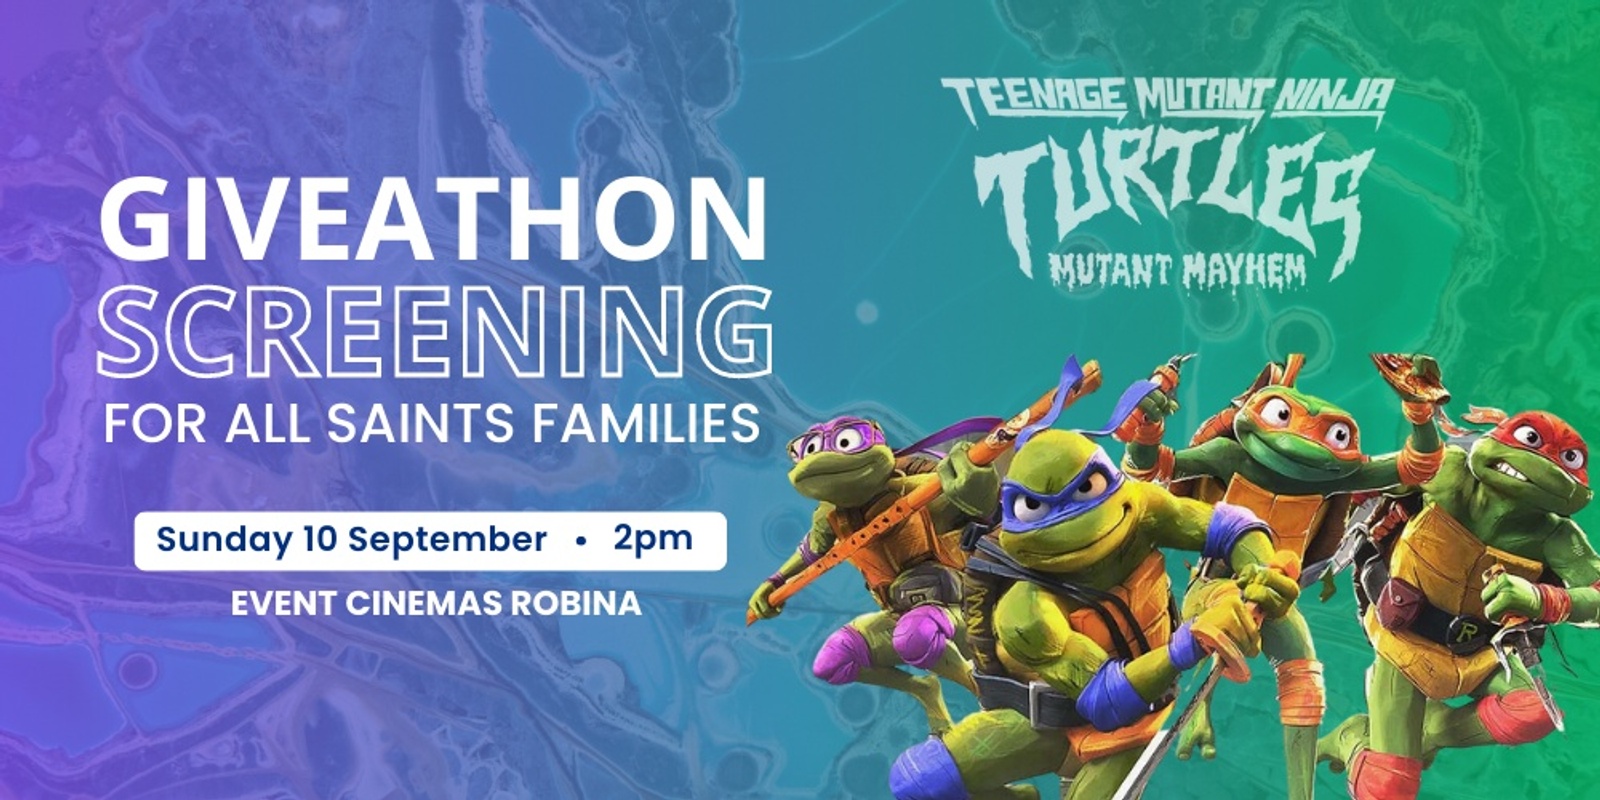 Banner image for Teenage Mutant Ninja Turtles Giveathon Fundraiser